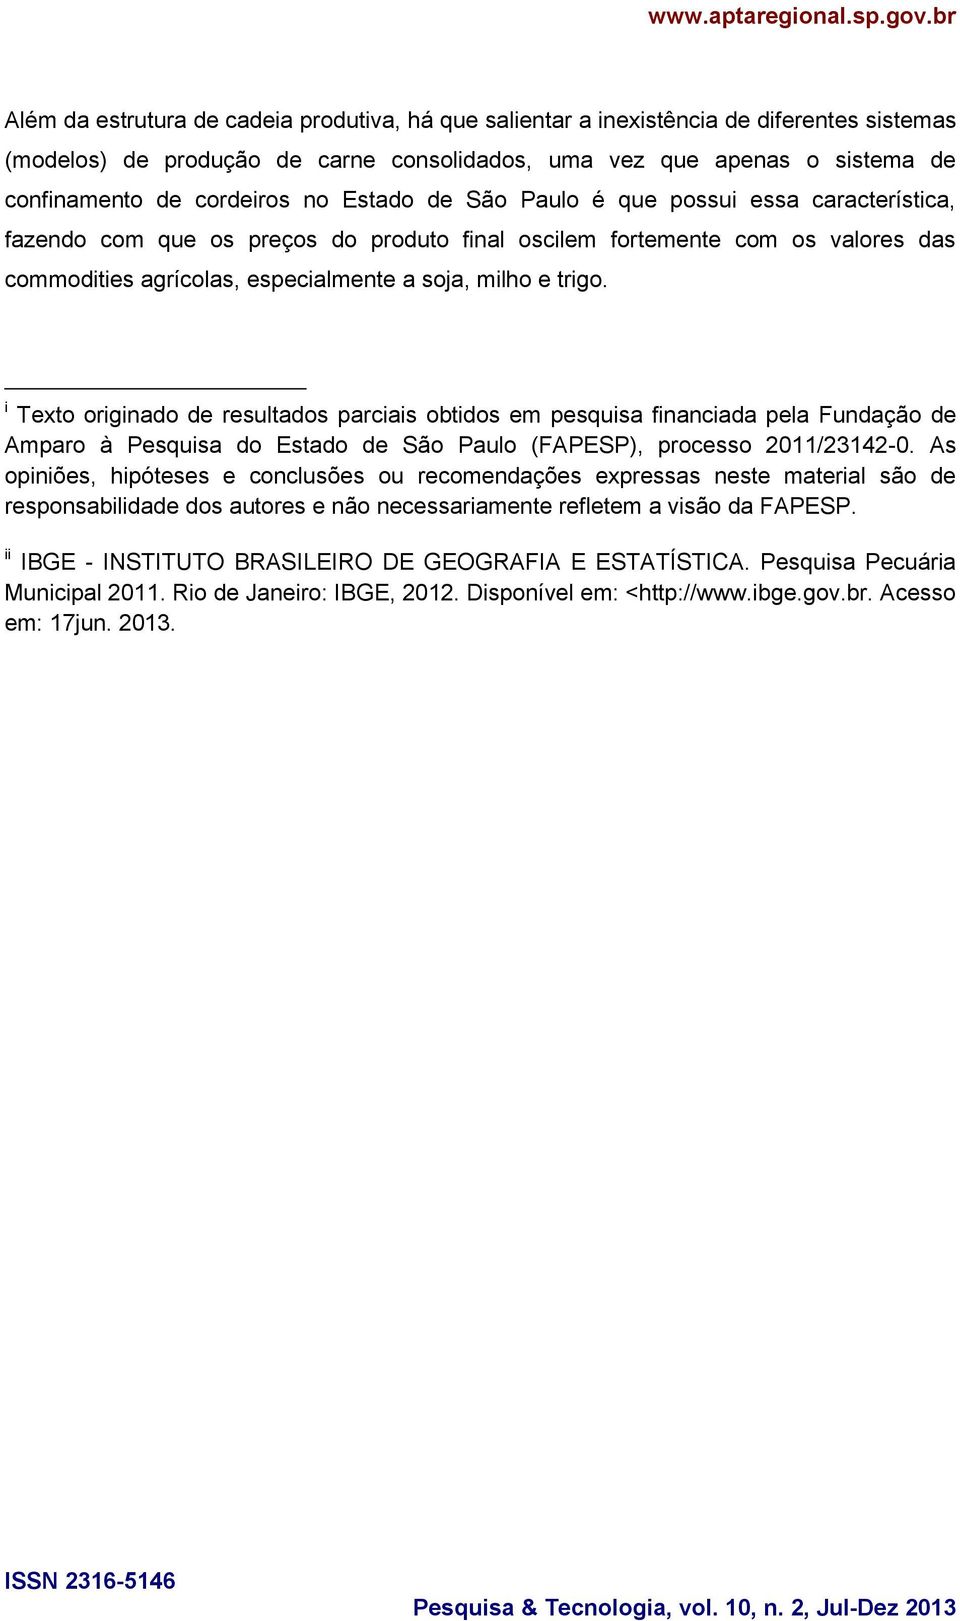 i Texto originado de resultados parciais obtidos em pesquisa financiada pela Fundação de Amparo à Pesquisa do Estado de São Paulo (FAPESP), processo 2011/23142-0.